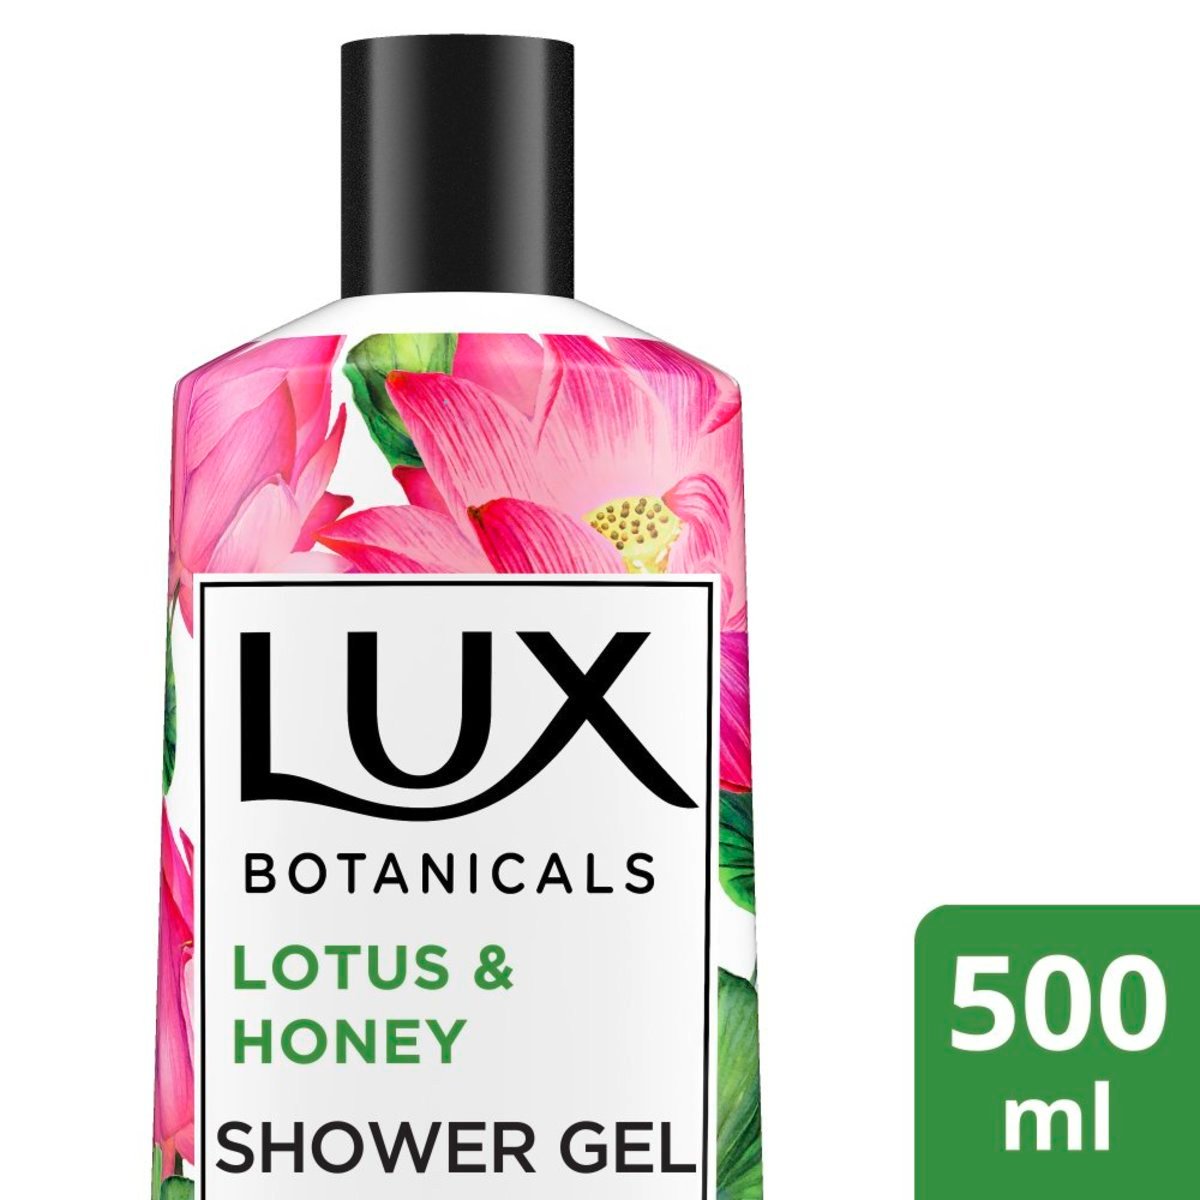 Lux Botanicals Glowing Skin Body Wash Lotus & Honey 500 ml